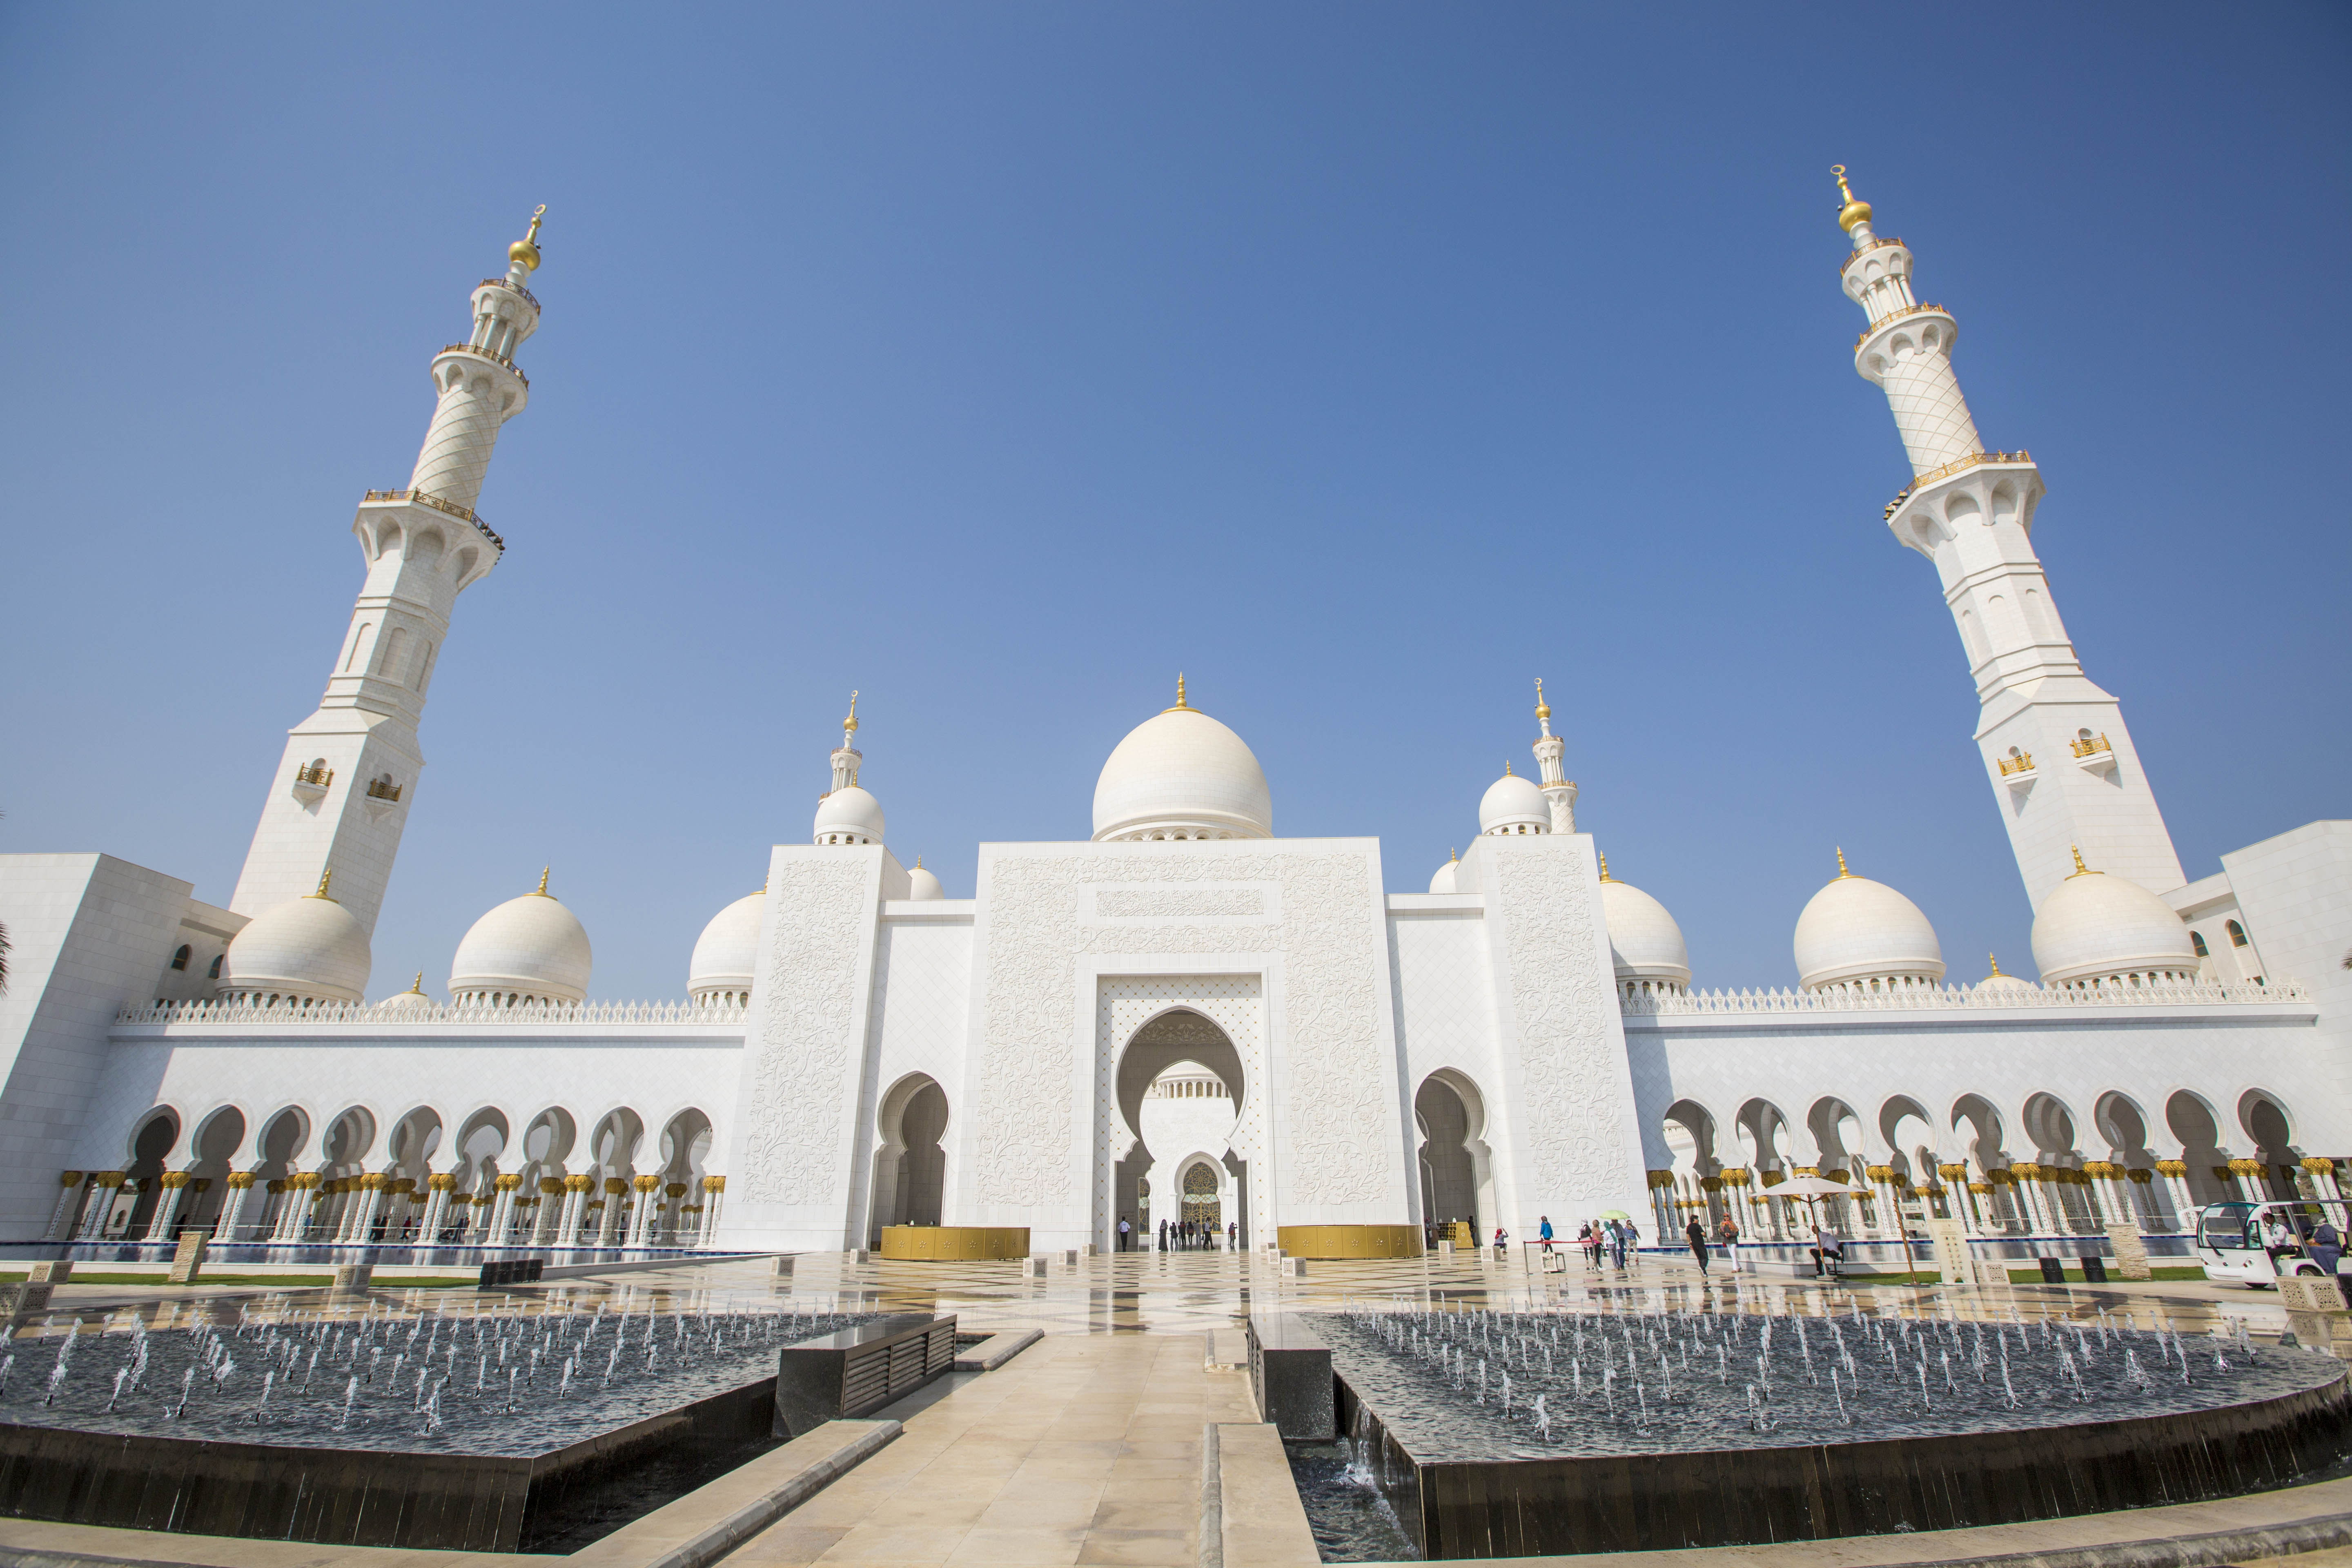 【携程攻略】阿布扎比谢赫扎耶德大清真寺景点,谢赫扎耶德清真寺是阿联酋最大的清真寺，世界第八大清寺。整个建筑群…